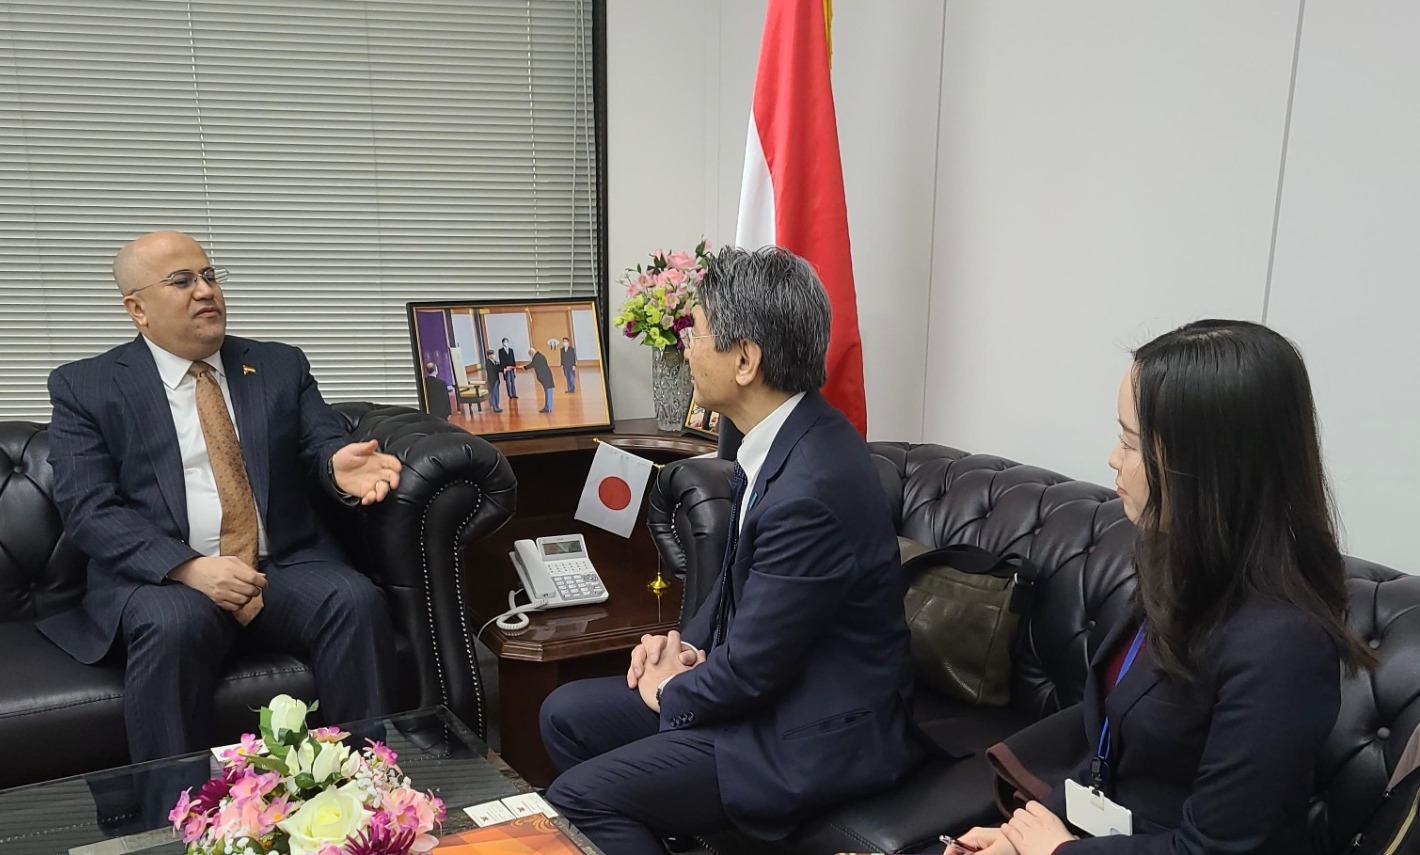 السفير السنيني يلتقي ممثل الحكومة اليابانية للسلام والاستقرار الدولي